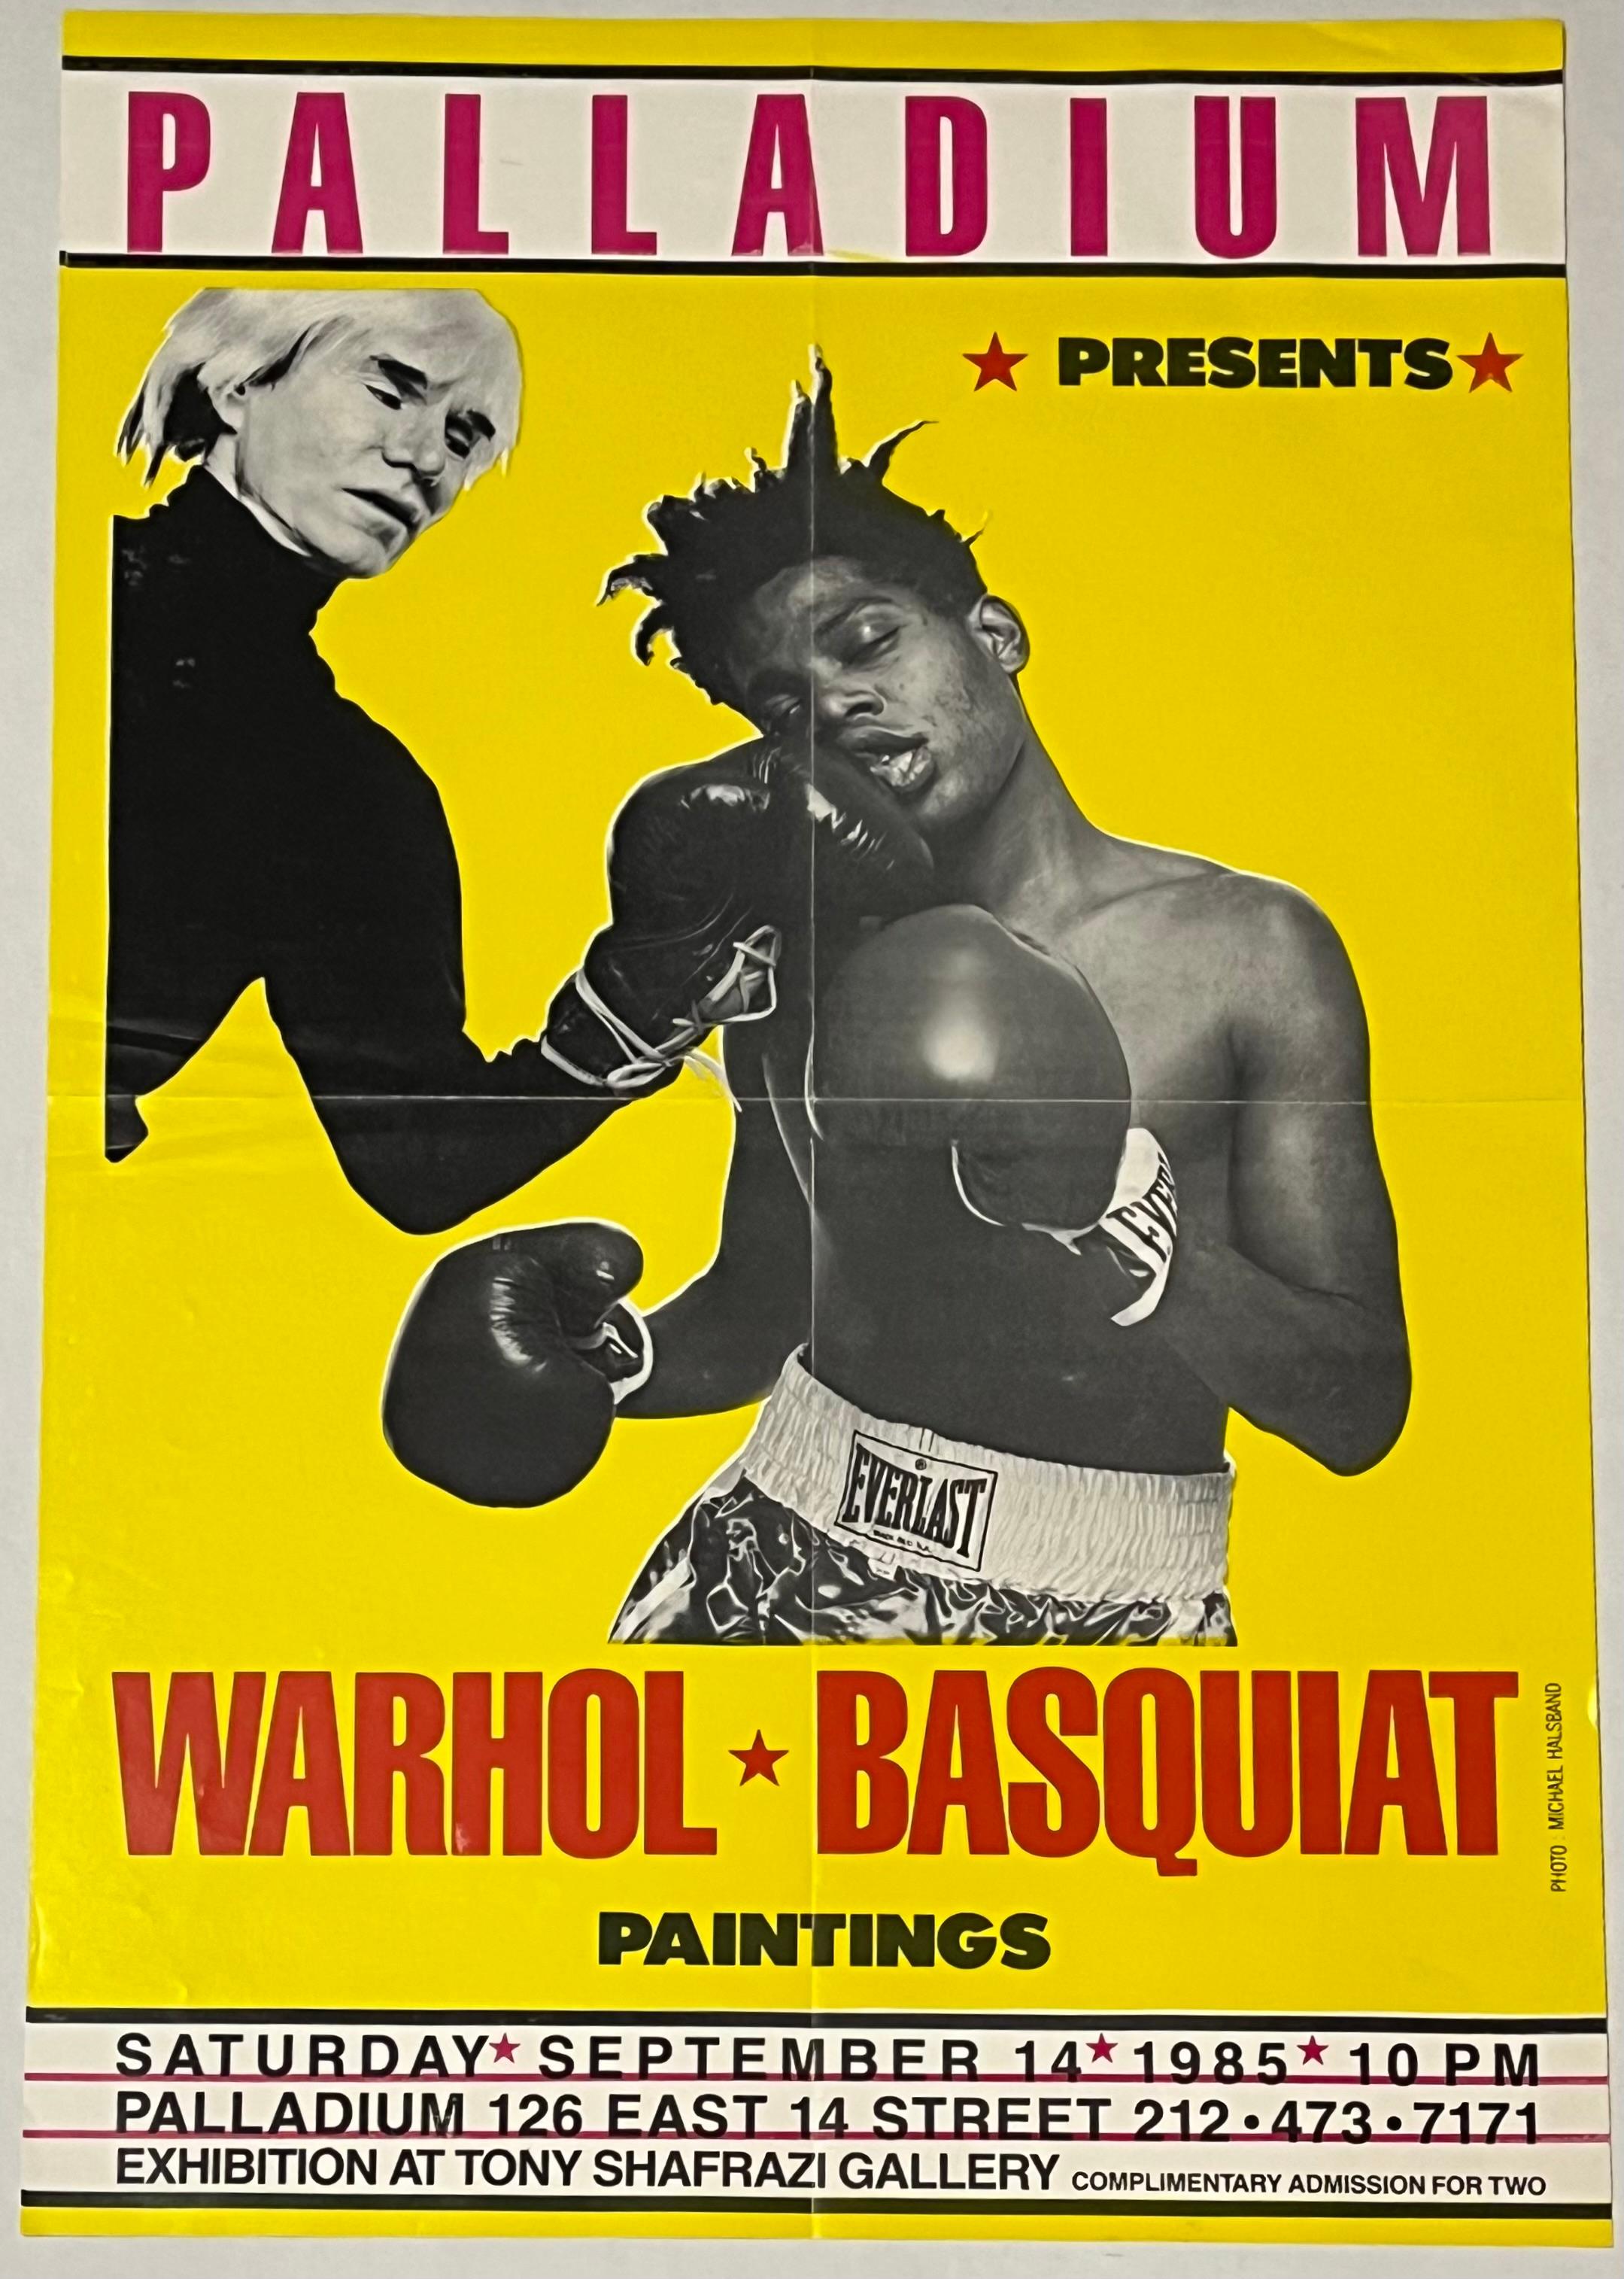 Affiche de boxe de Basquiat de Warhol (Basquiat Warhol boxing The Palladium) - Jaune Figurative Print par Michael Halsband